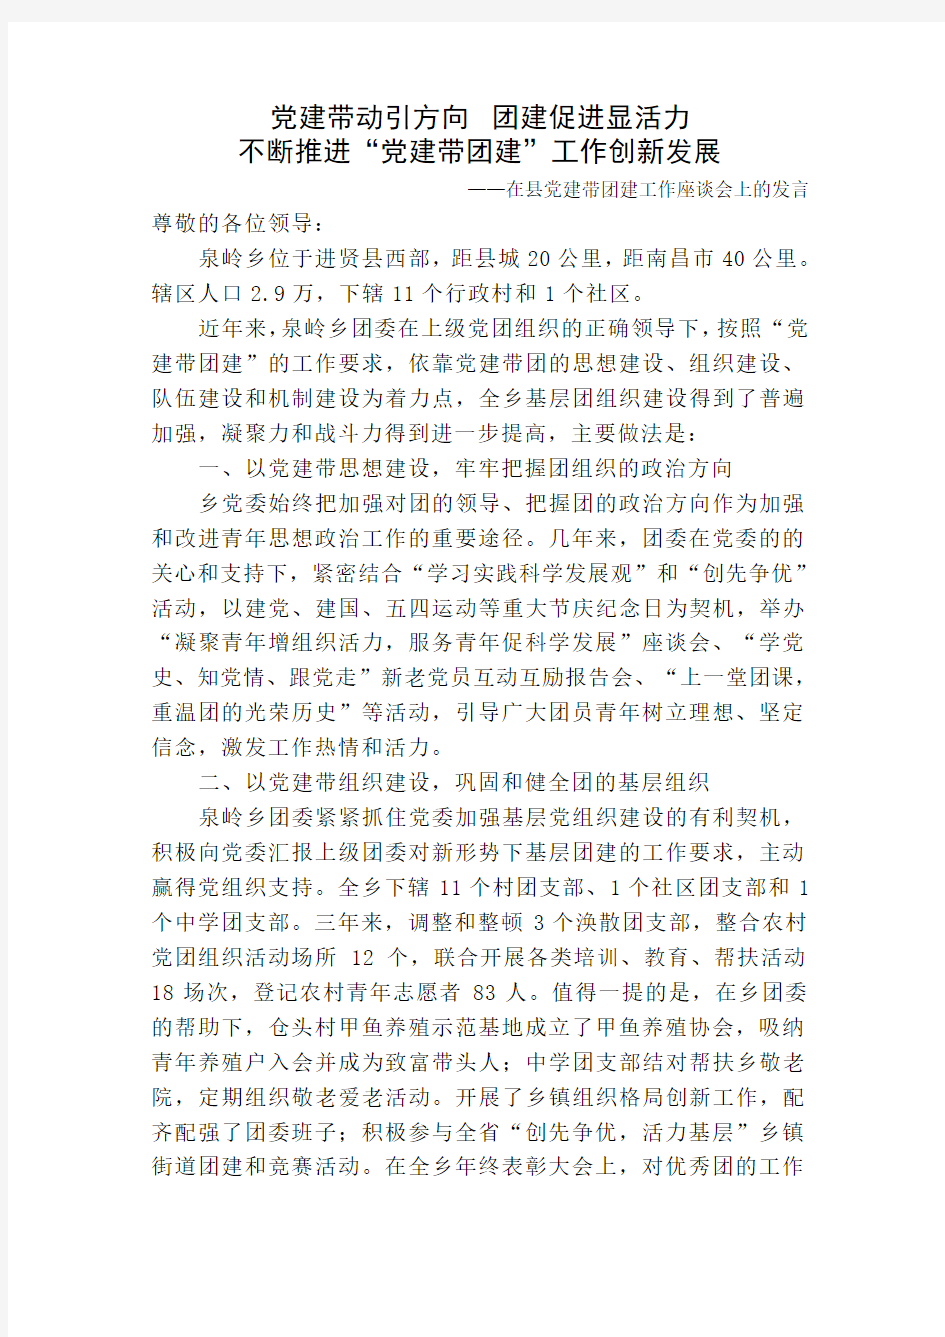 进贤县泉岭乡--党建带团建座谈会发言稿20120719